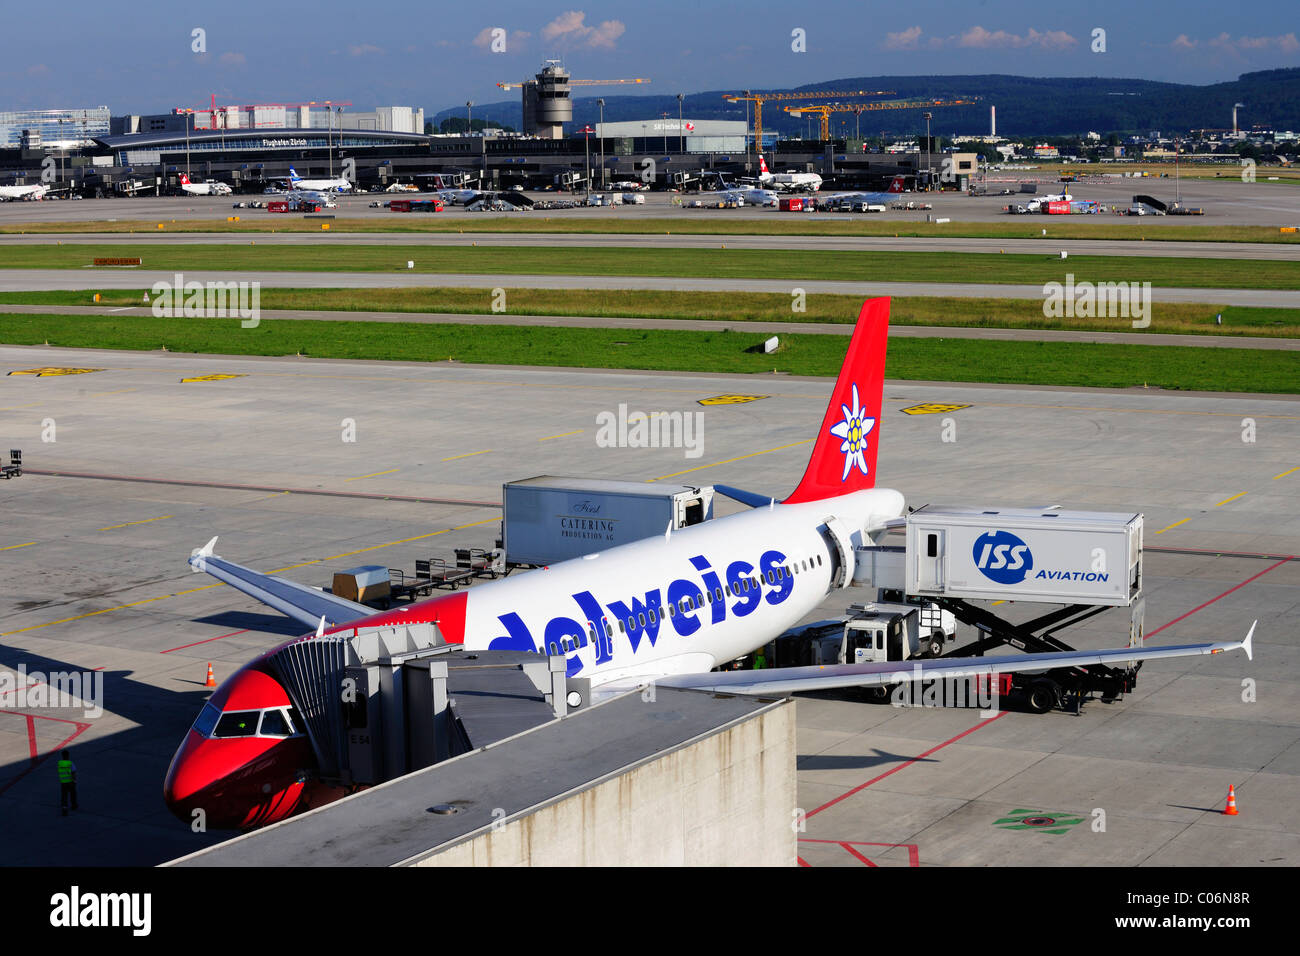 Airbus 320 von Edelweiss Air, Dock Midfield, Flughafen Zürich, Schweiz,  Europa Stockfotografie - Alamy